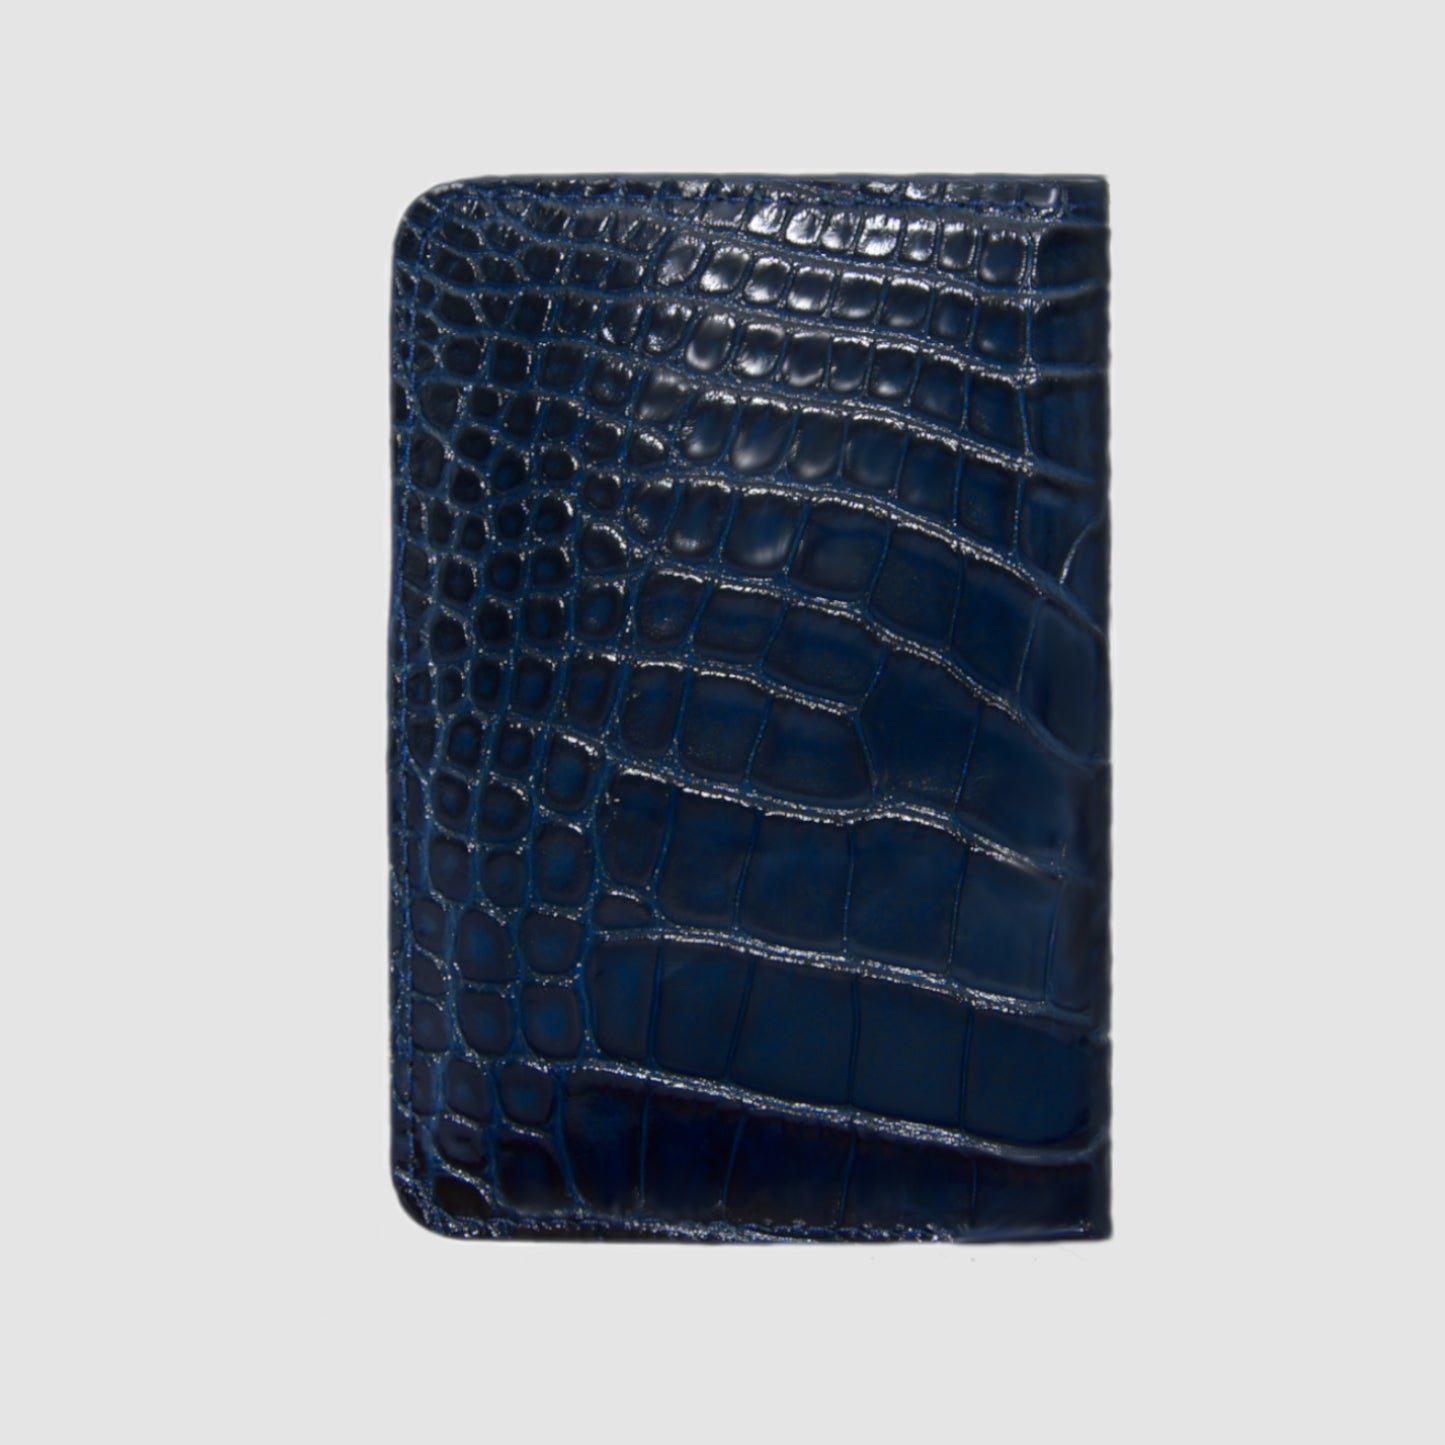 Porta carte Organizer tascabile in vera pelle di Alligatore Personalizzabile - Blu Navy